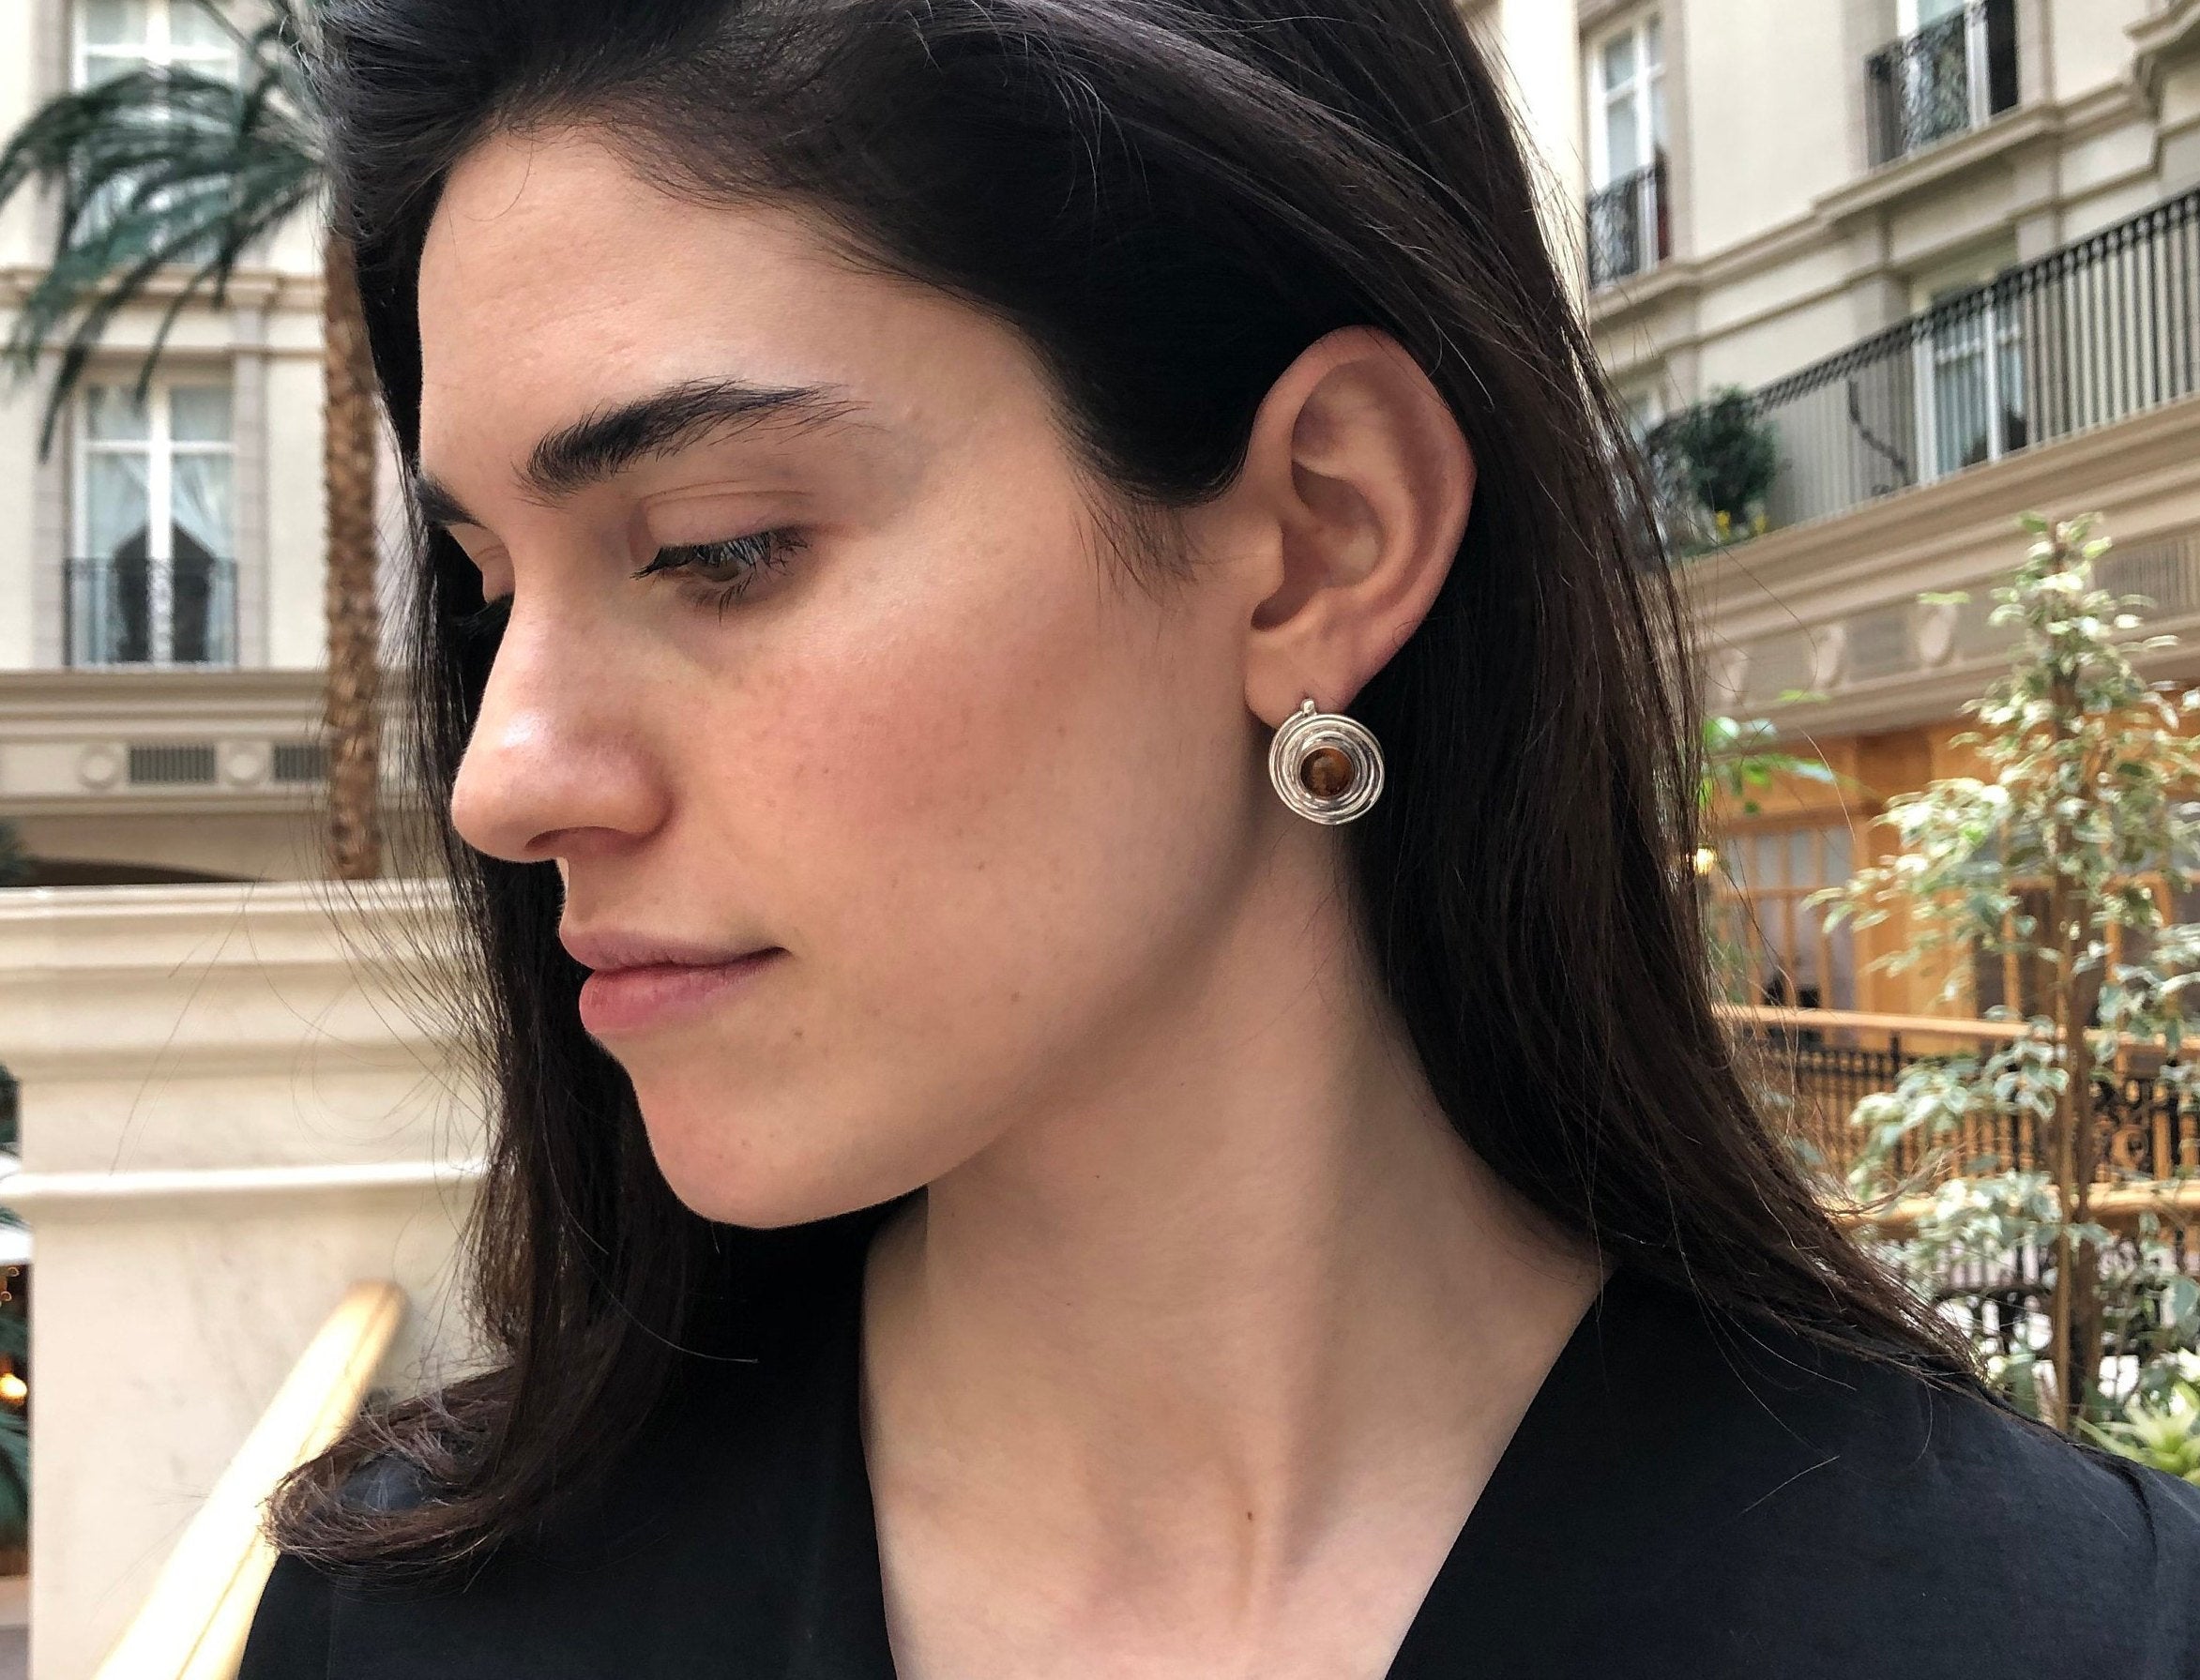 chanel silver pearl earrings sterling